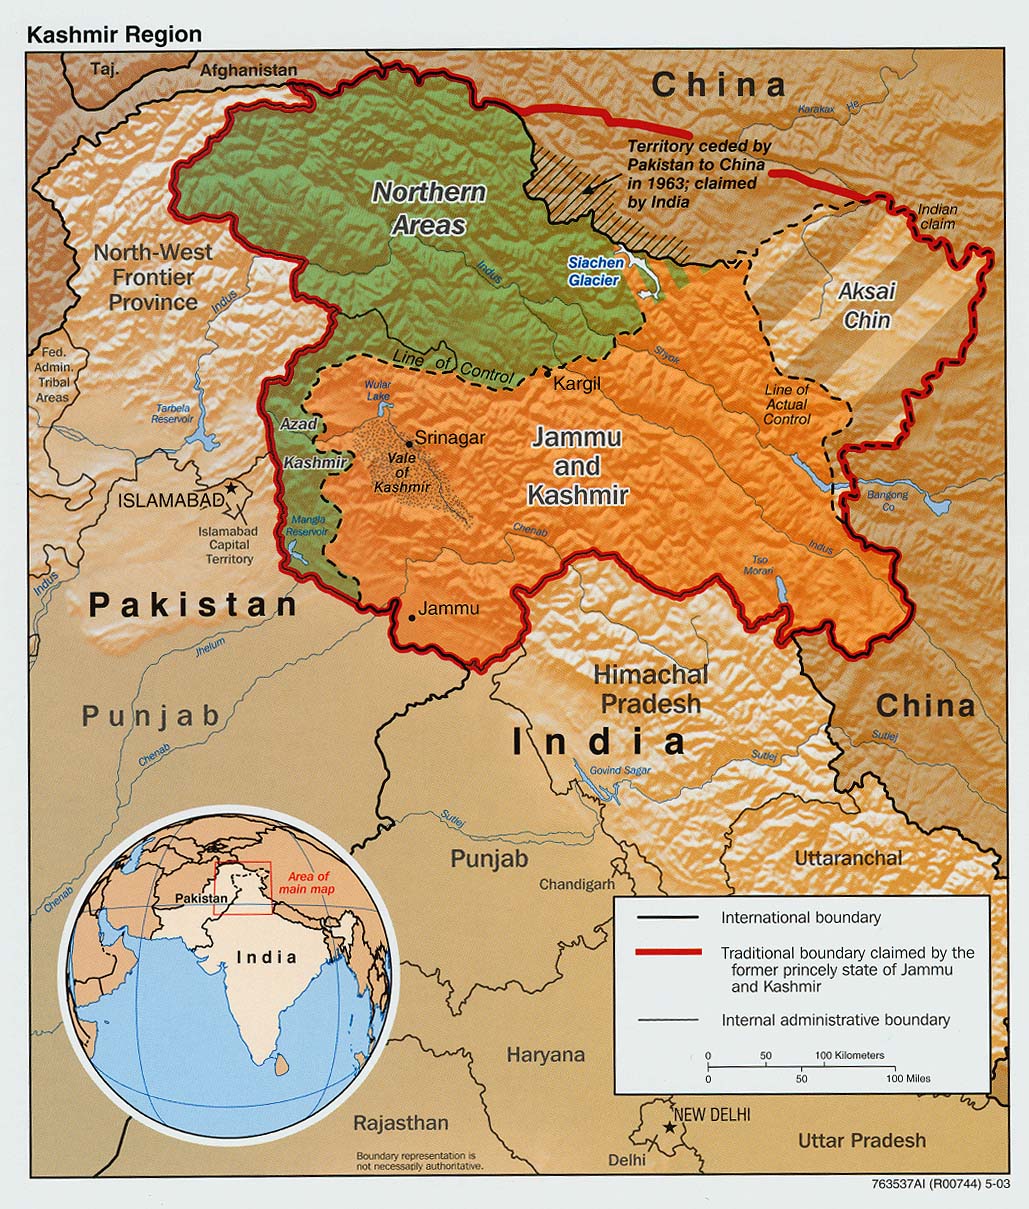  Putin: Jačati zaštitu granice Tadžikistana  Kashmir_disputed_2003